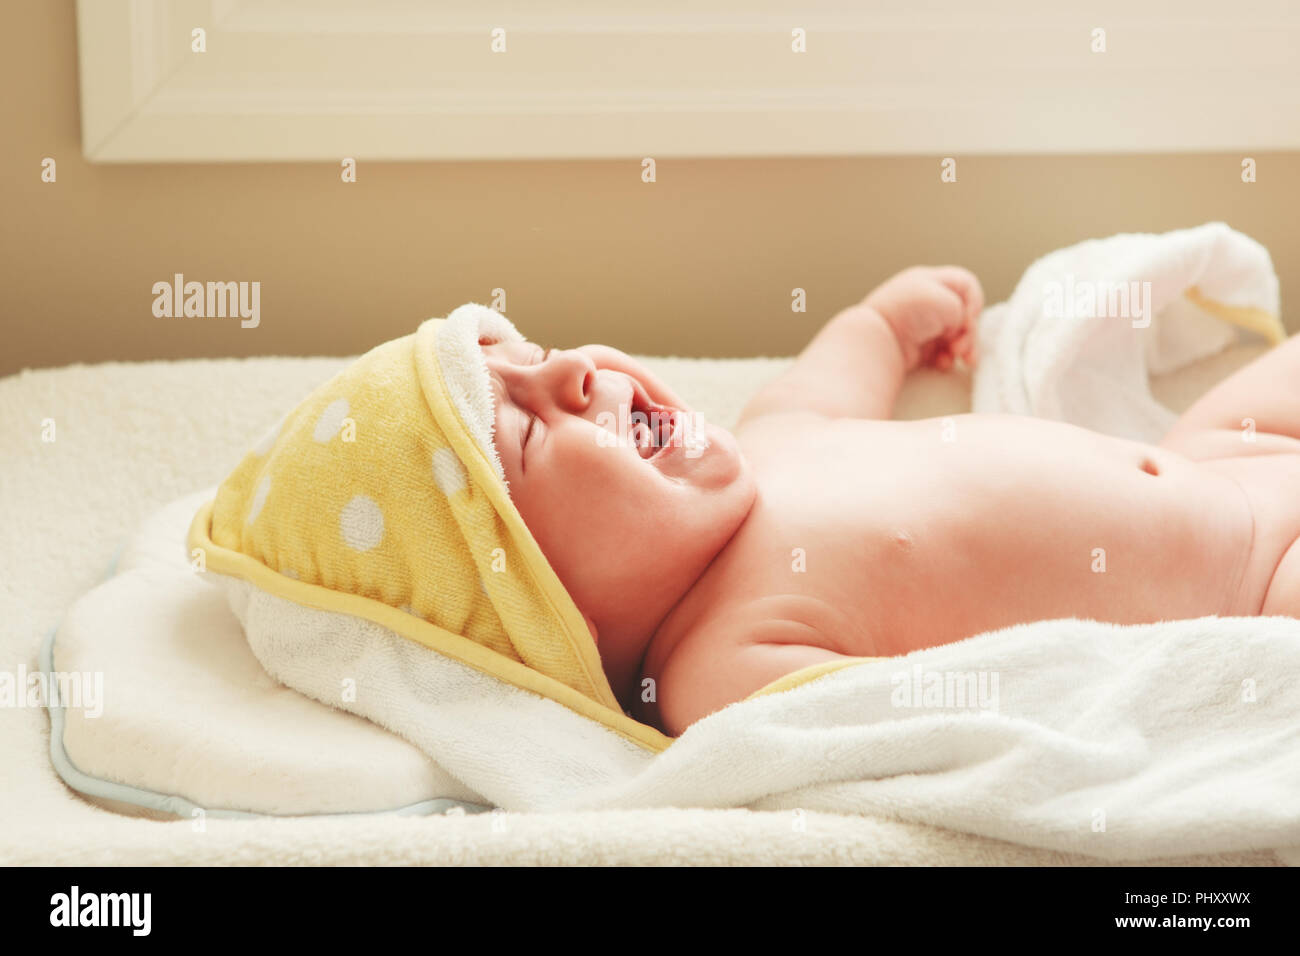 Closeup portrait de pleurer crier bébé nouveau-né enfant allongé sur une table  à langer, couverts enveloppé dans une serviette de bain après avoir pris,  le mode de vie de réelles émotions c